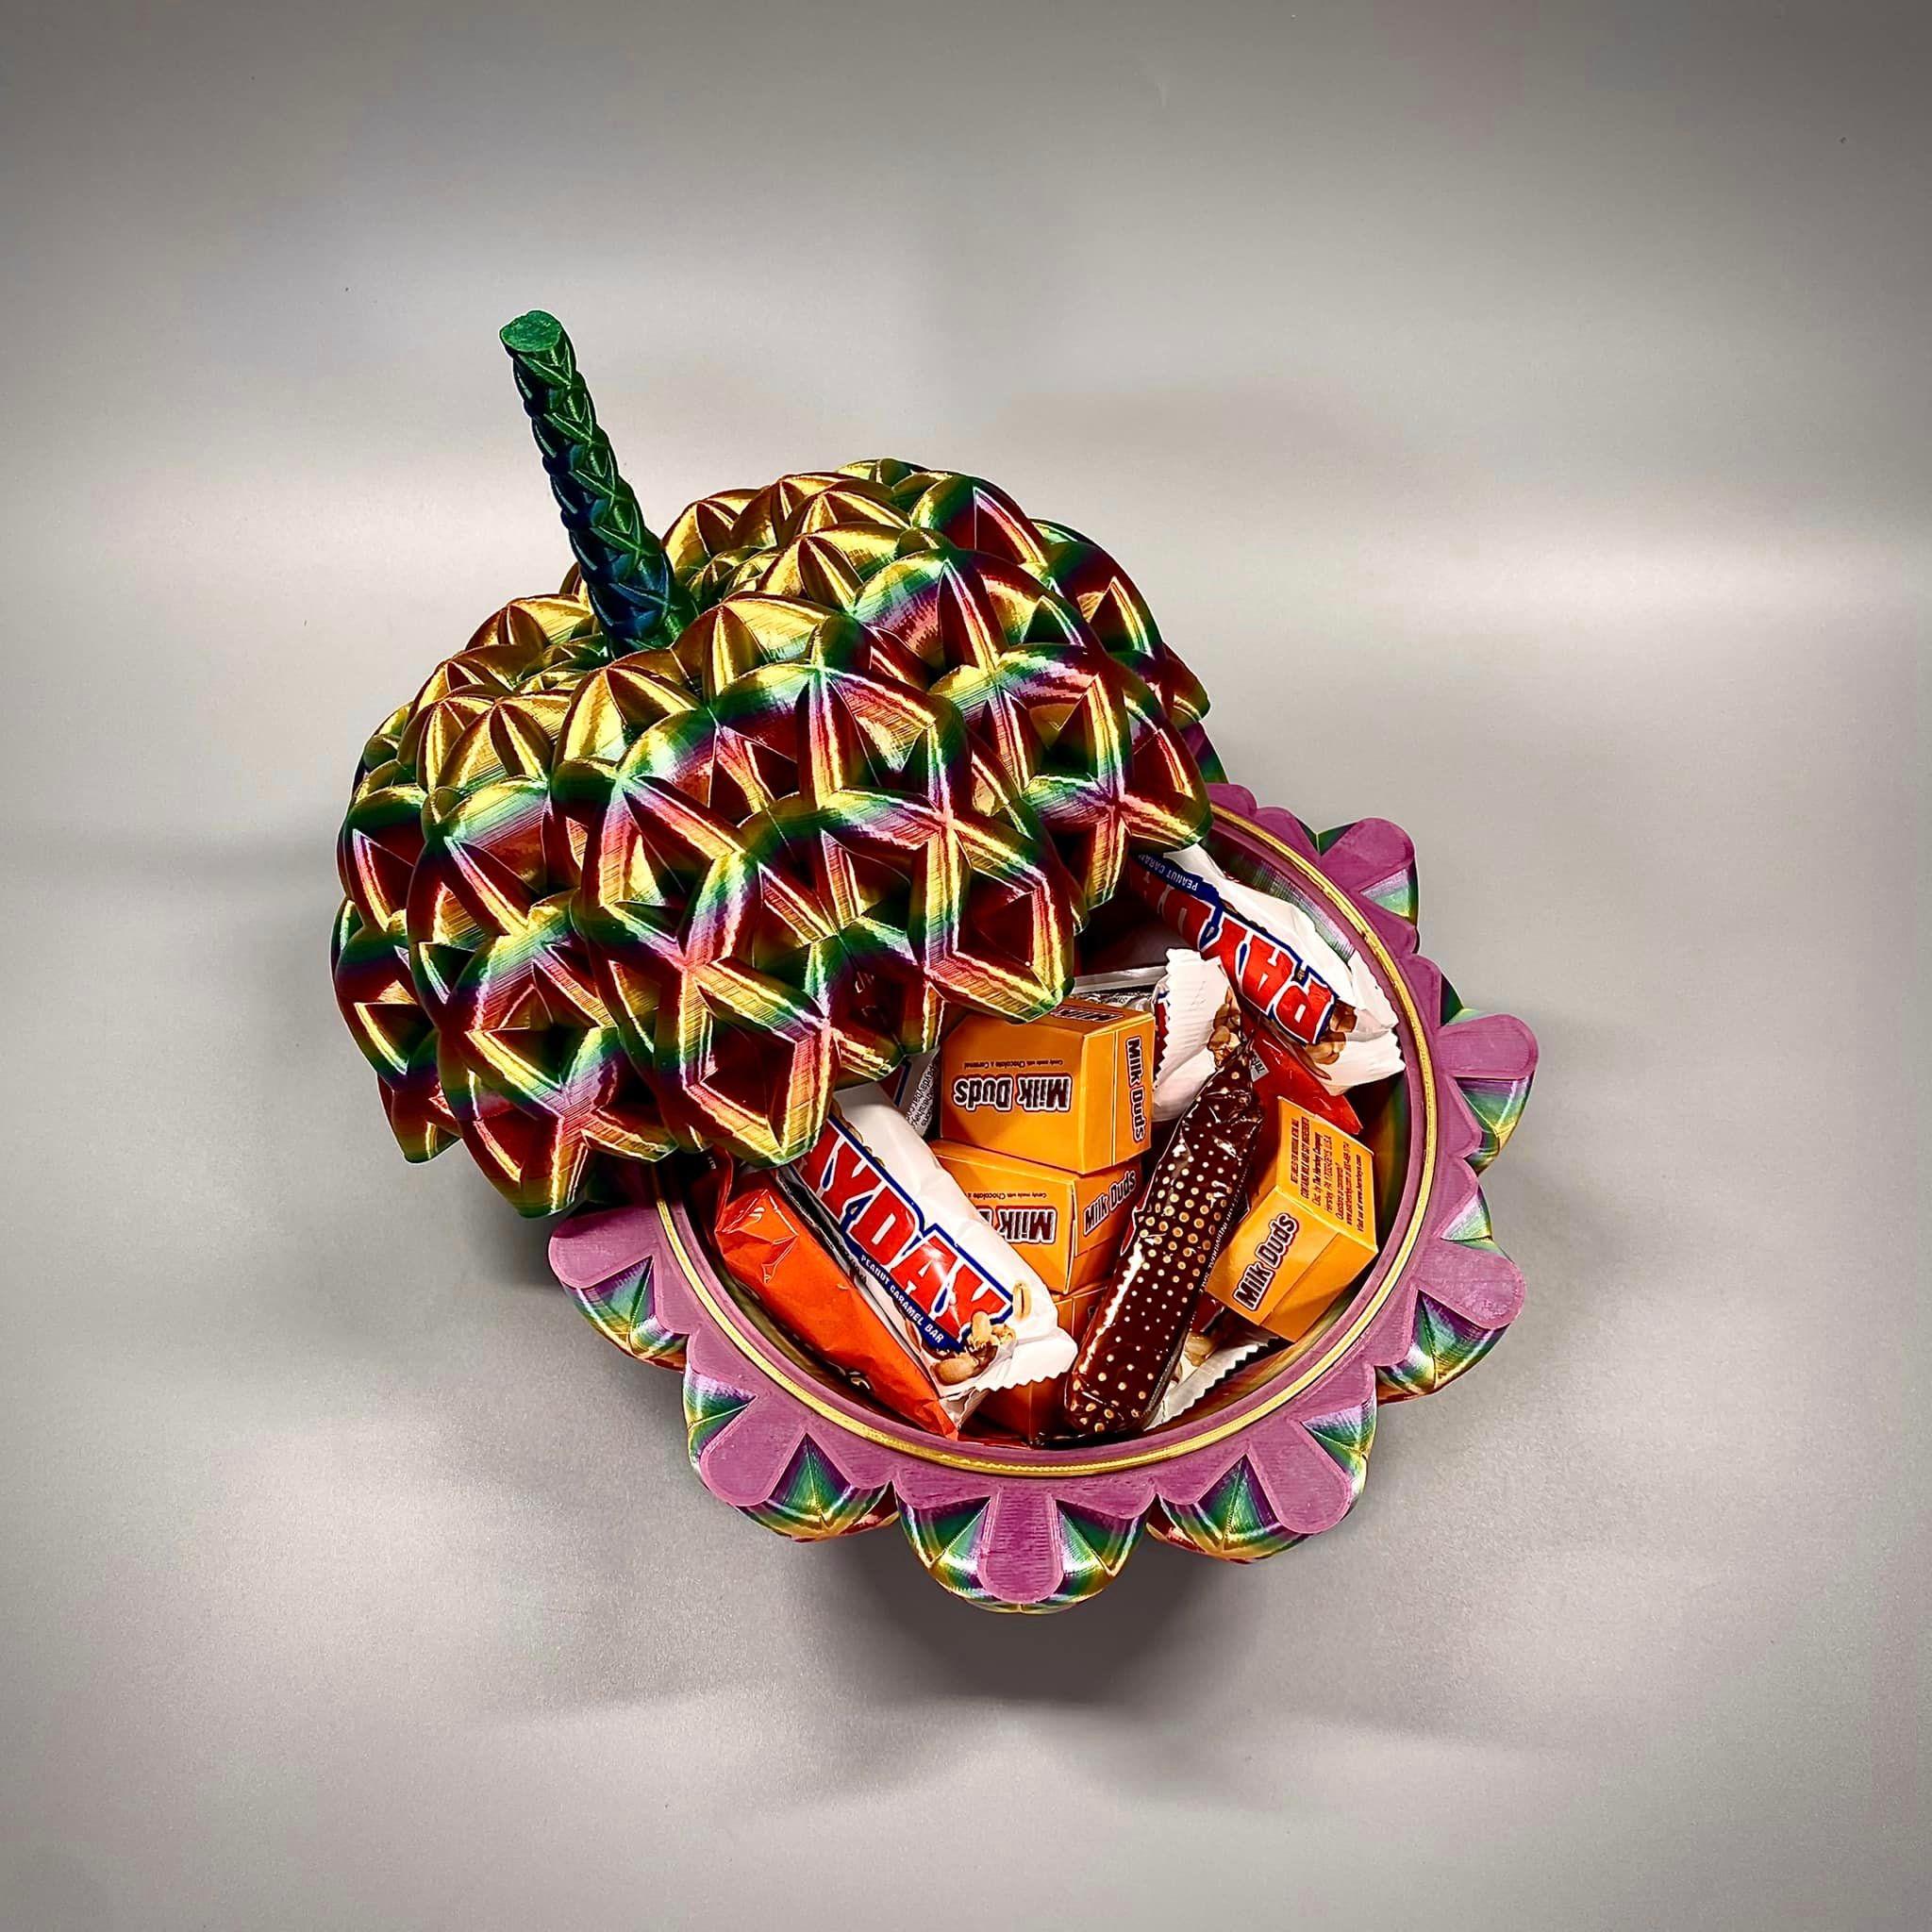 Pumpkin Candy Bowl 3d model